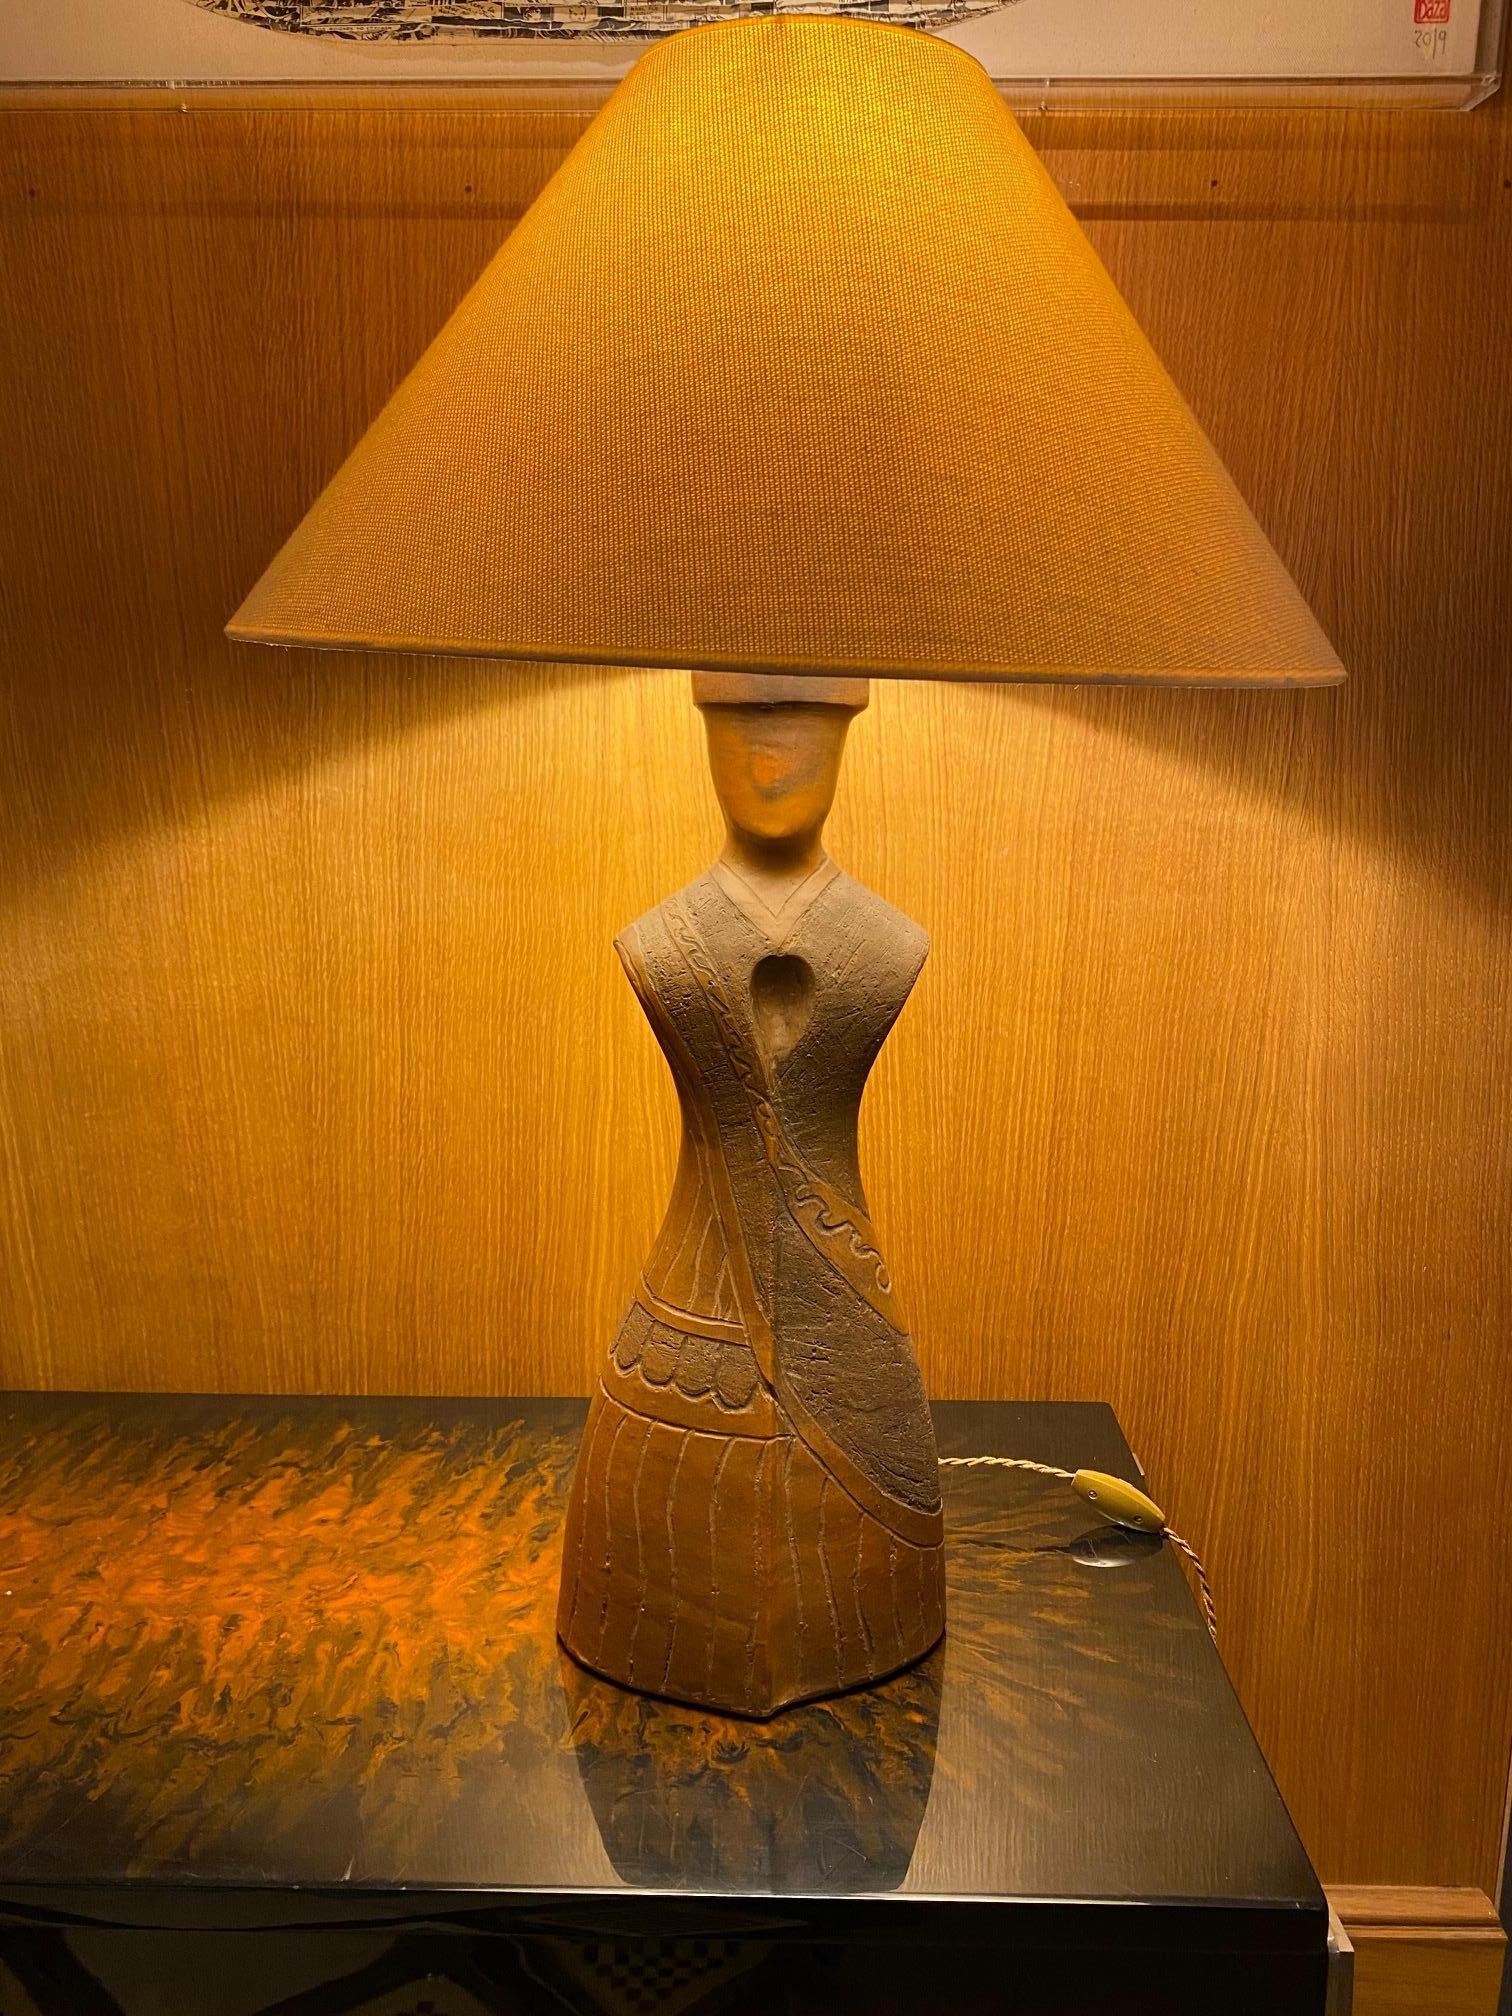 Anthropomorphic ceramic table lamp, 1960s.